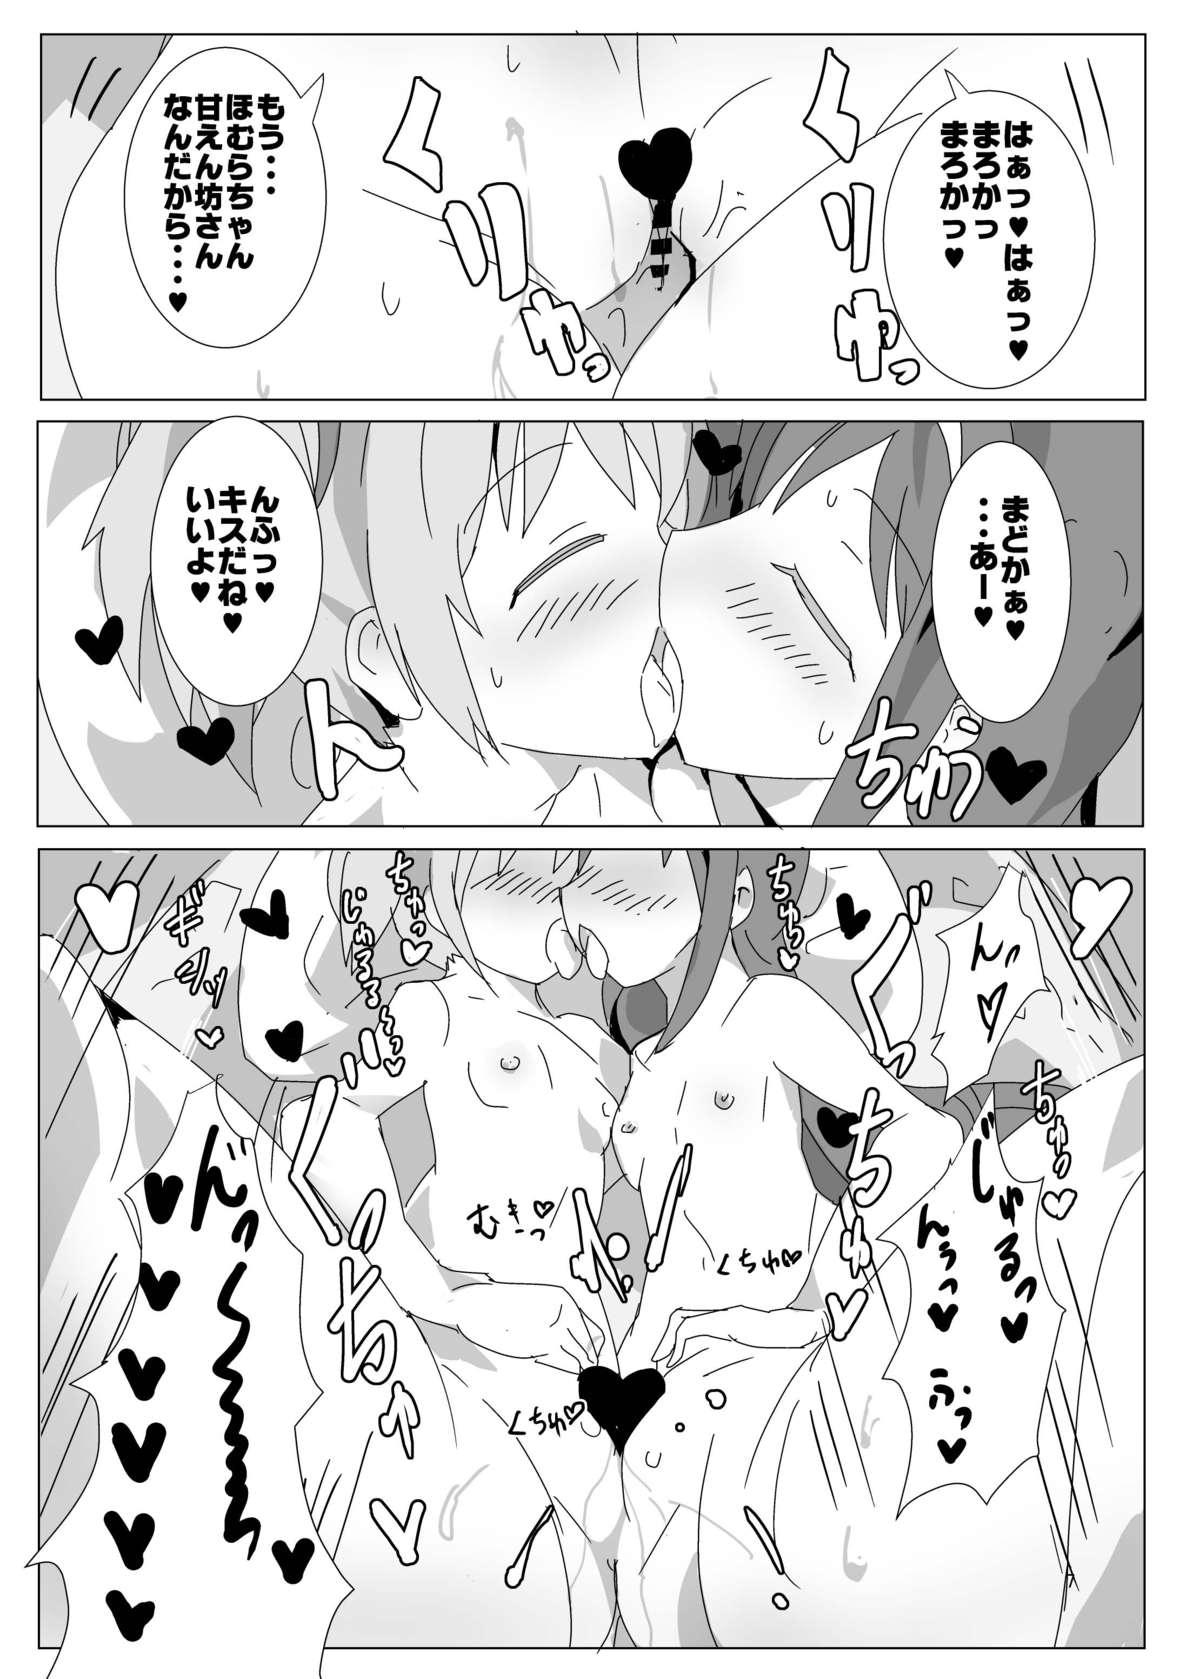 Transex Tokunou! MadoHomu Milk Vacation - Puella magi madoka magica Fellatio - Page 6